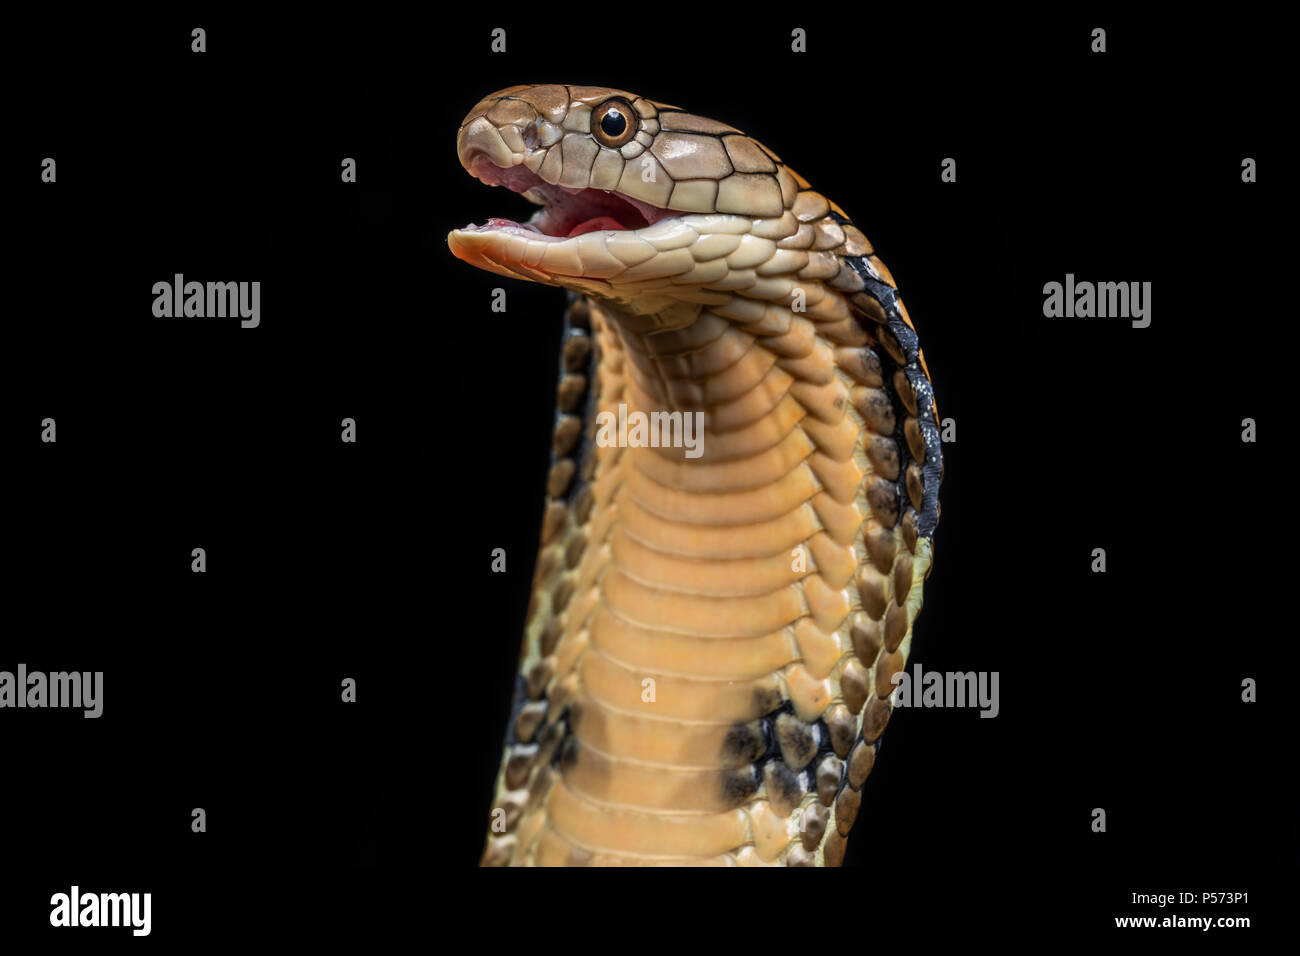 Il re cobra (Ophiophagus hannah), noto anche come hamadryad, è un serpente velenoso specie nella famiglia Elapidae Foto Stock